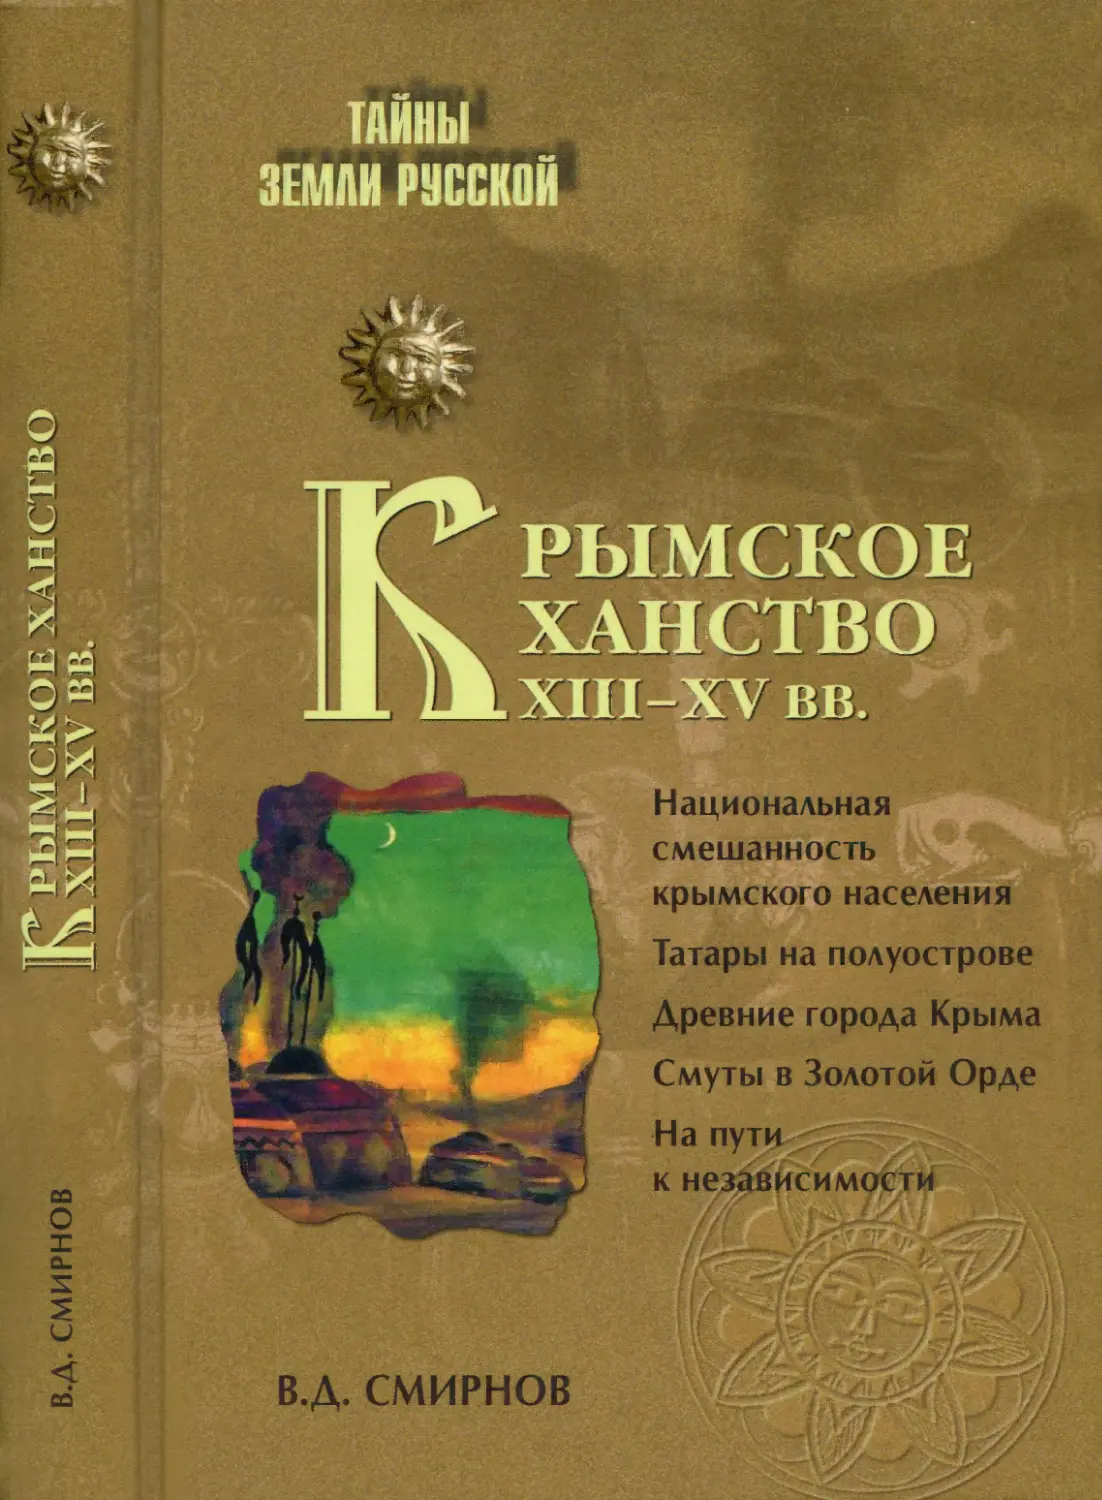 КРЫМСКОЕ ХАНСТВО XIII-XV вв.